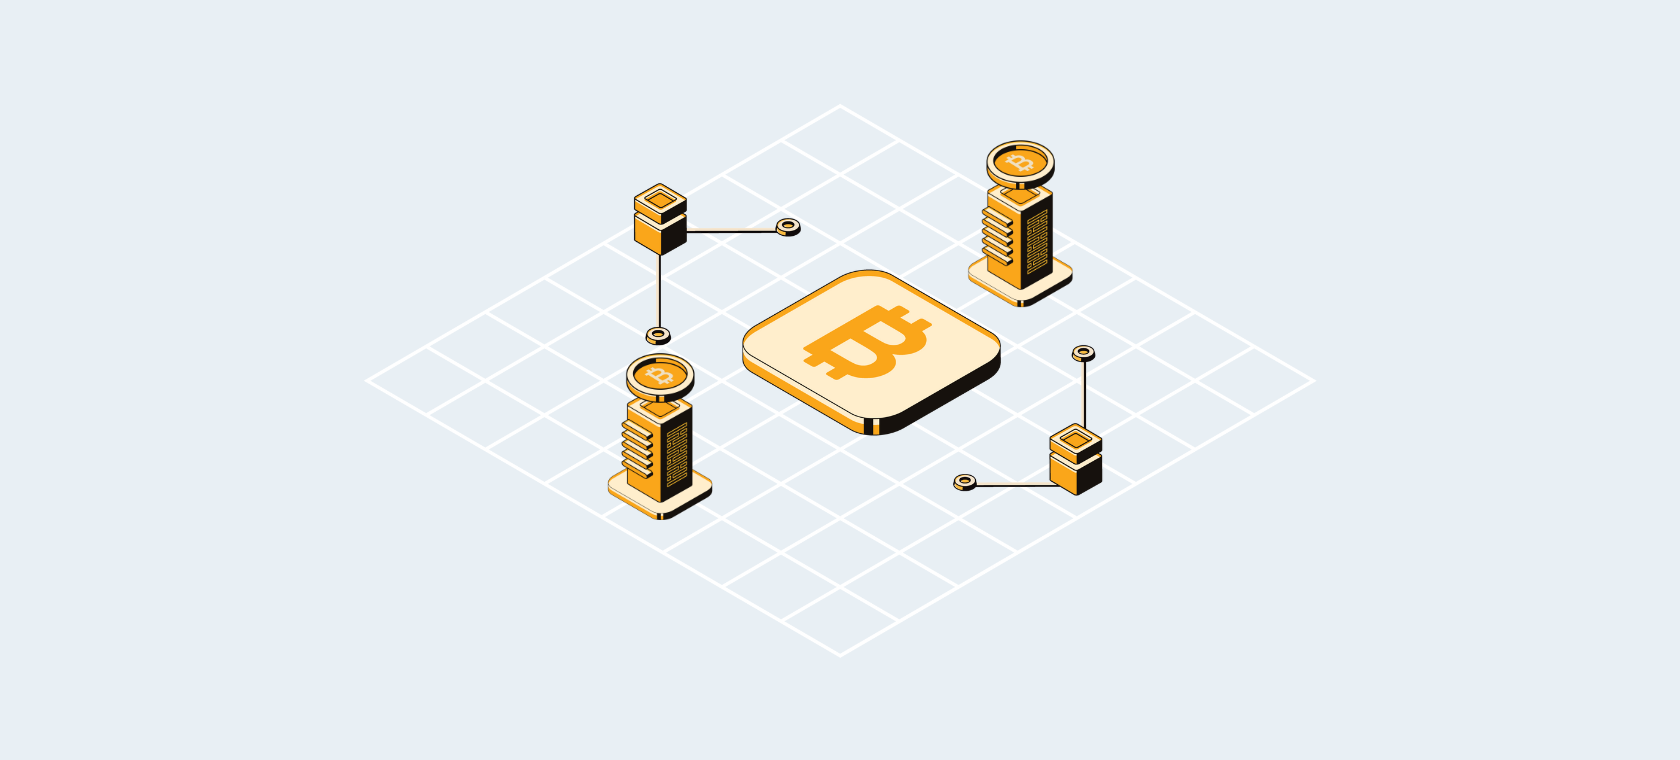 Cos'è Bitcoin? - Introduzione alla tecnologia Blockchain